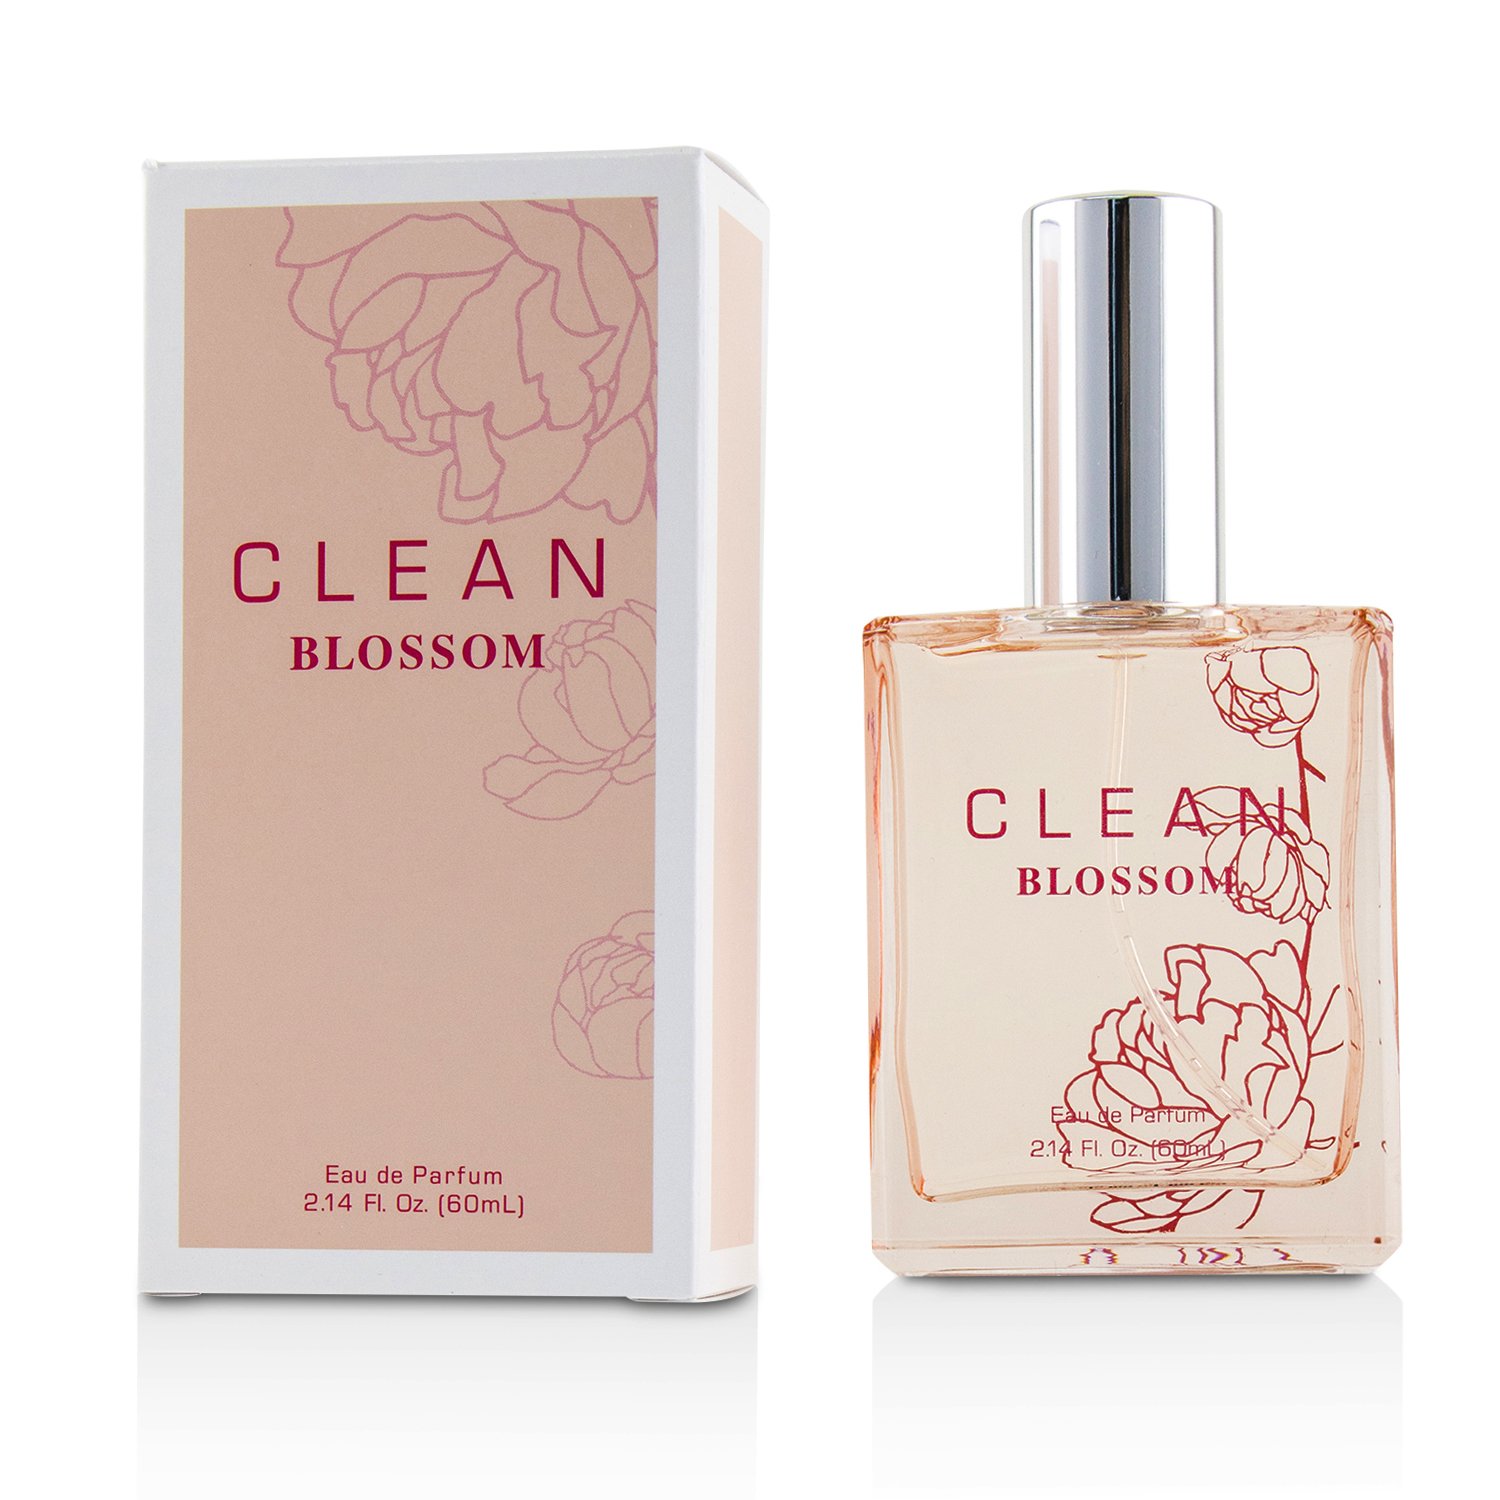 Clean - Clean Blossom 綻放女性香水